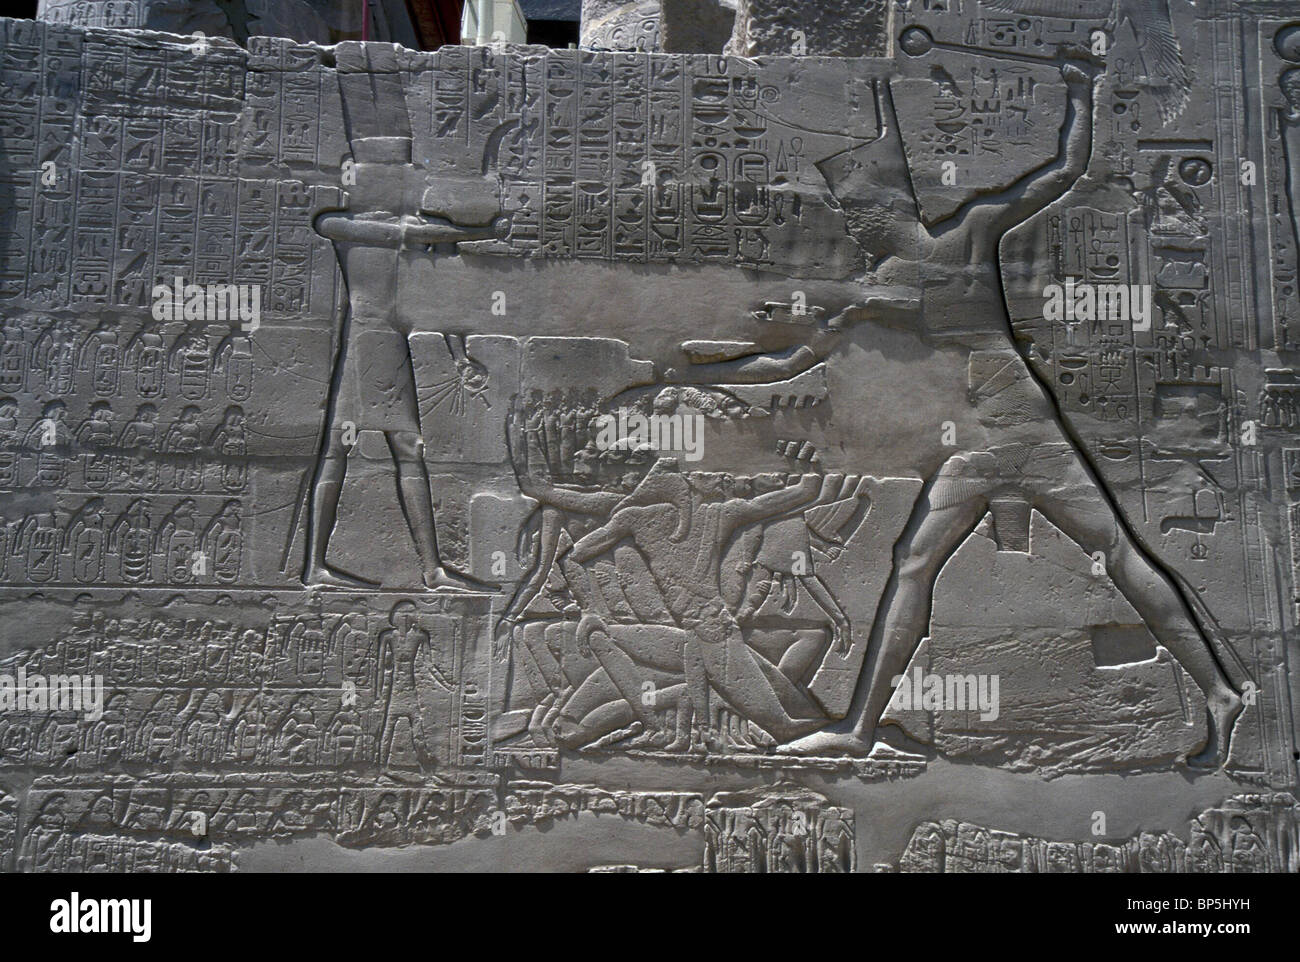 Le pharaon TUTMOSIS III. Aura frappé ses captifs. Les captifs sont agenouillés SYRIENS PROBABLEMENT BARBU LEVANT LA MAIN DANS Banque D'Images